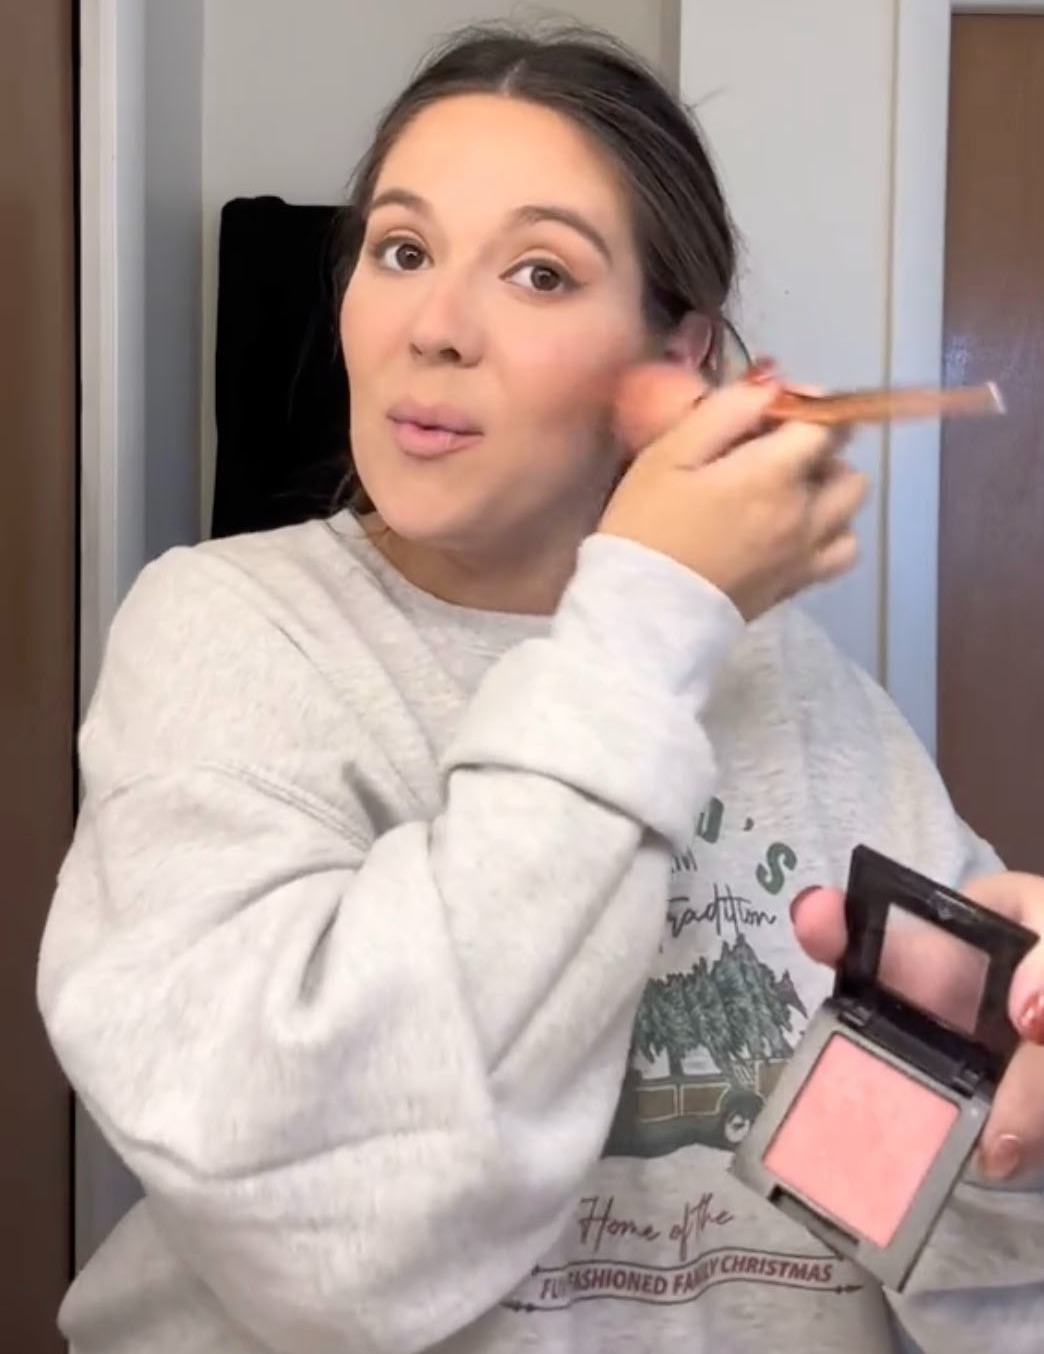 Sie filmte sich dabei, wie sie ihr Make-up auftrug, während sie erzählte, wie sie eine Woche nach der Geburt den Namen ihres Babys änderte